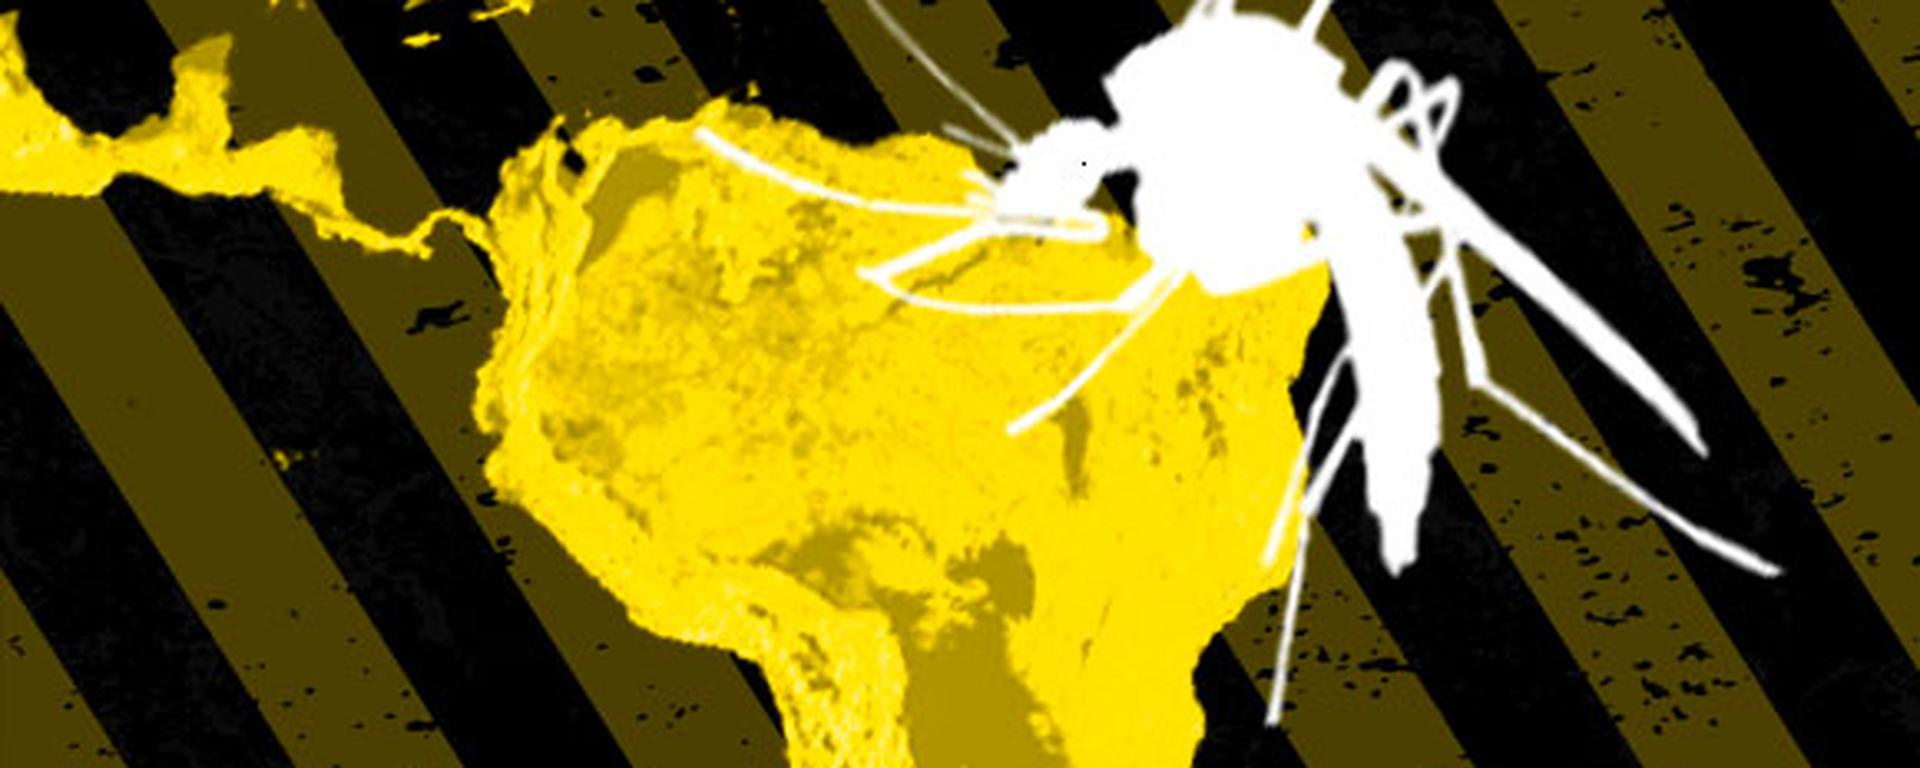 Dengue en Latinoamérica: El Perú tiene la mayor tasa de letalidad por la enfermedad en la región | INFORME